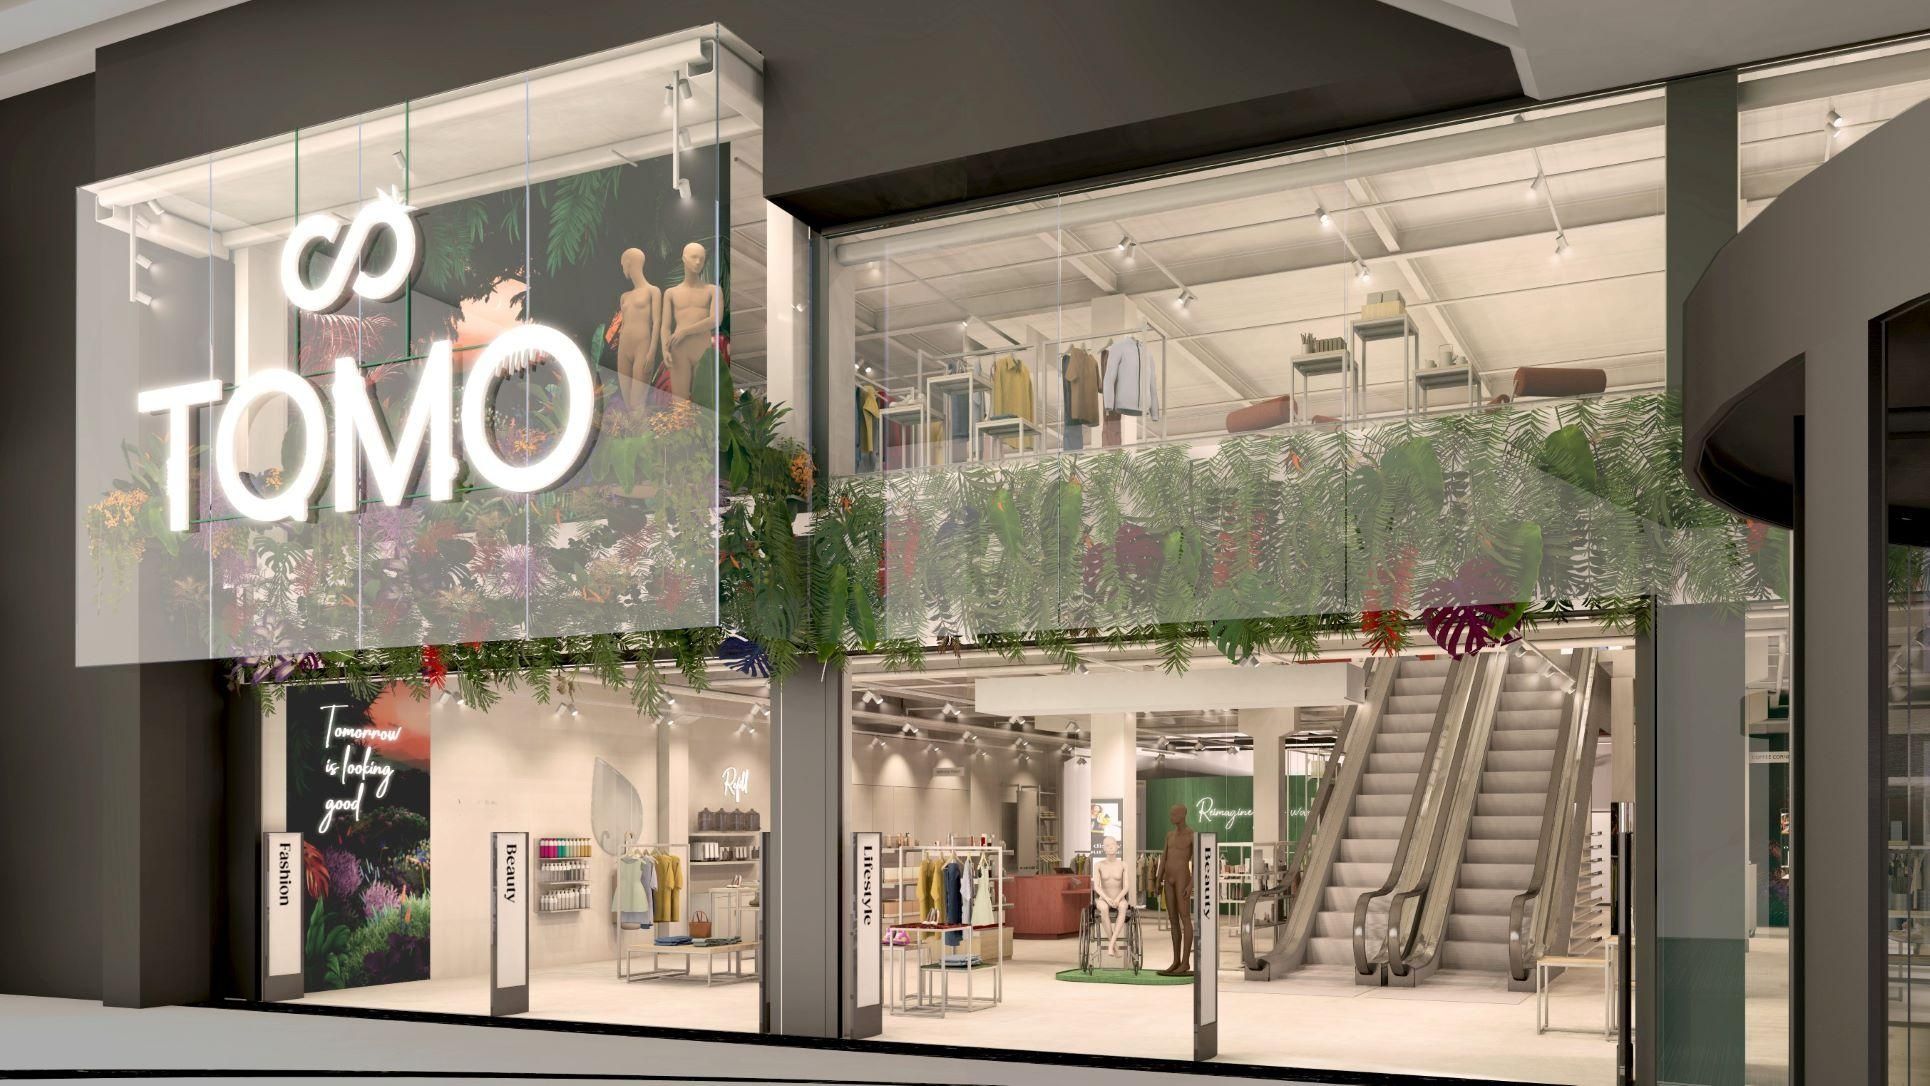 Maak kennis met TOMO, een nieuw Nederlands warenhuis met een duurzame en circulaire missie